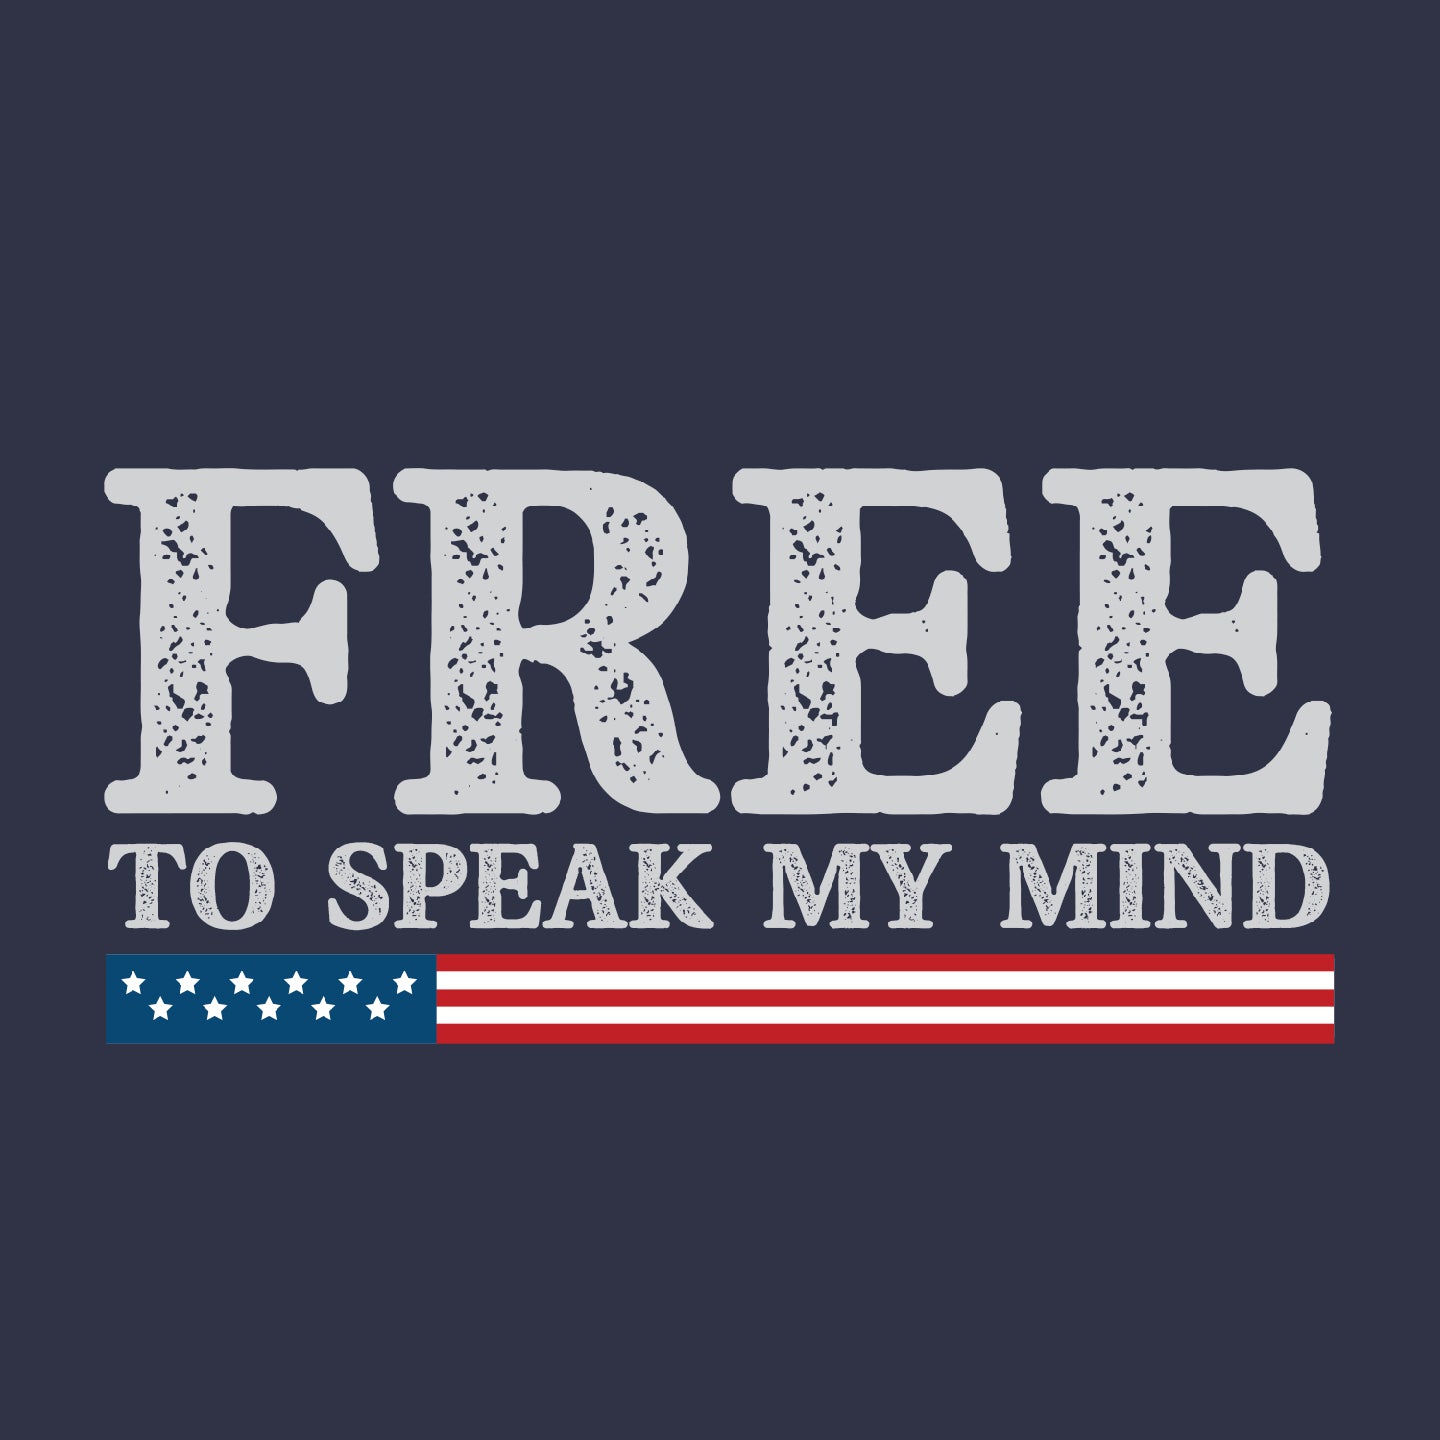 Free to speak my mind